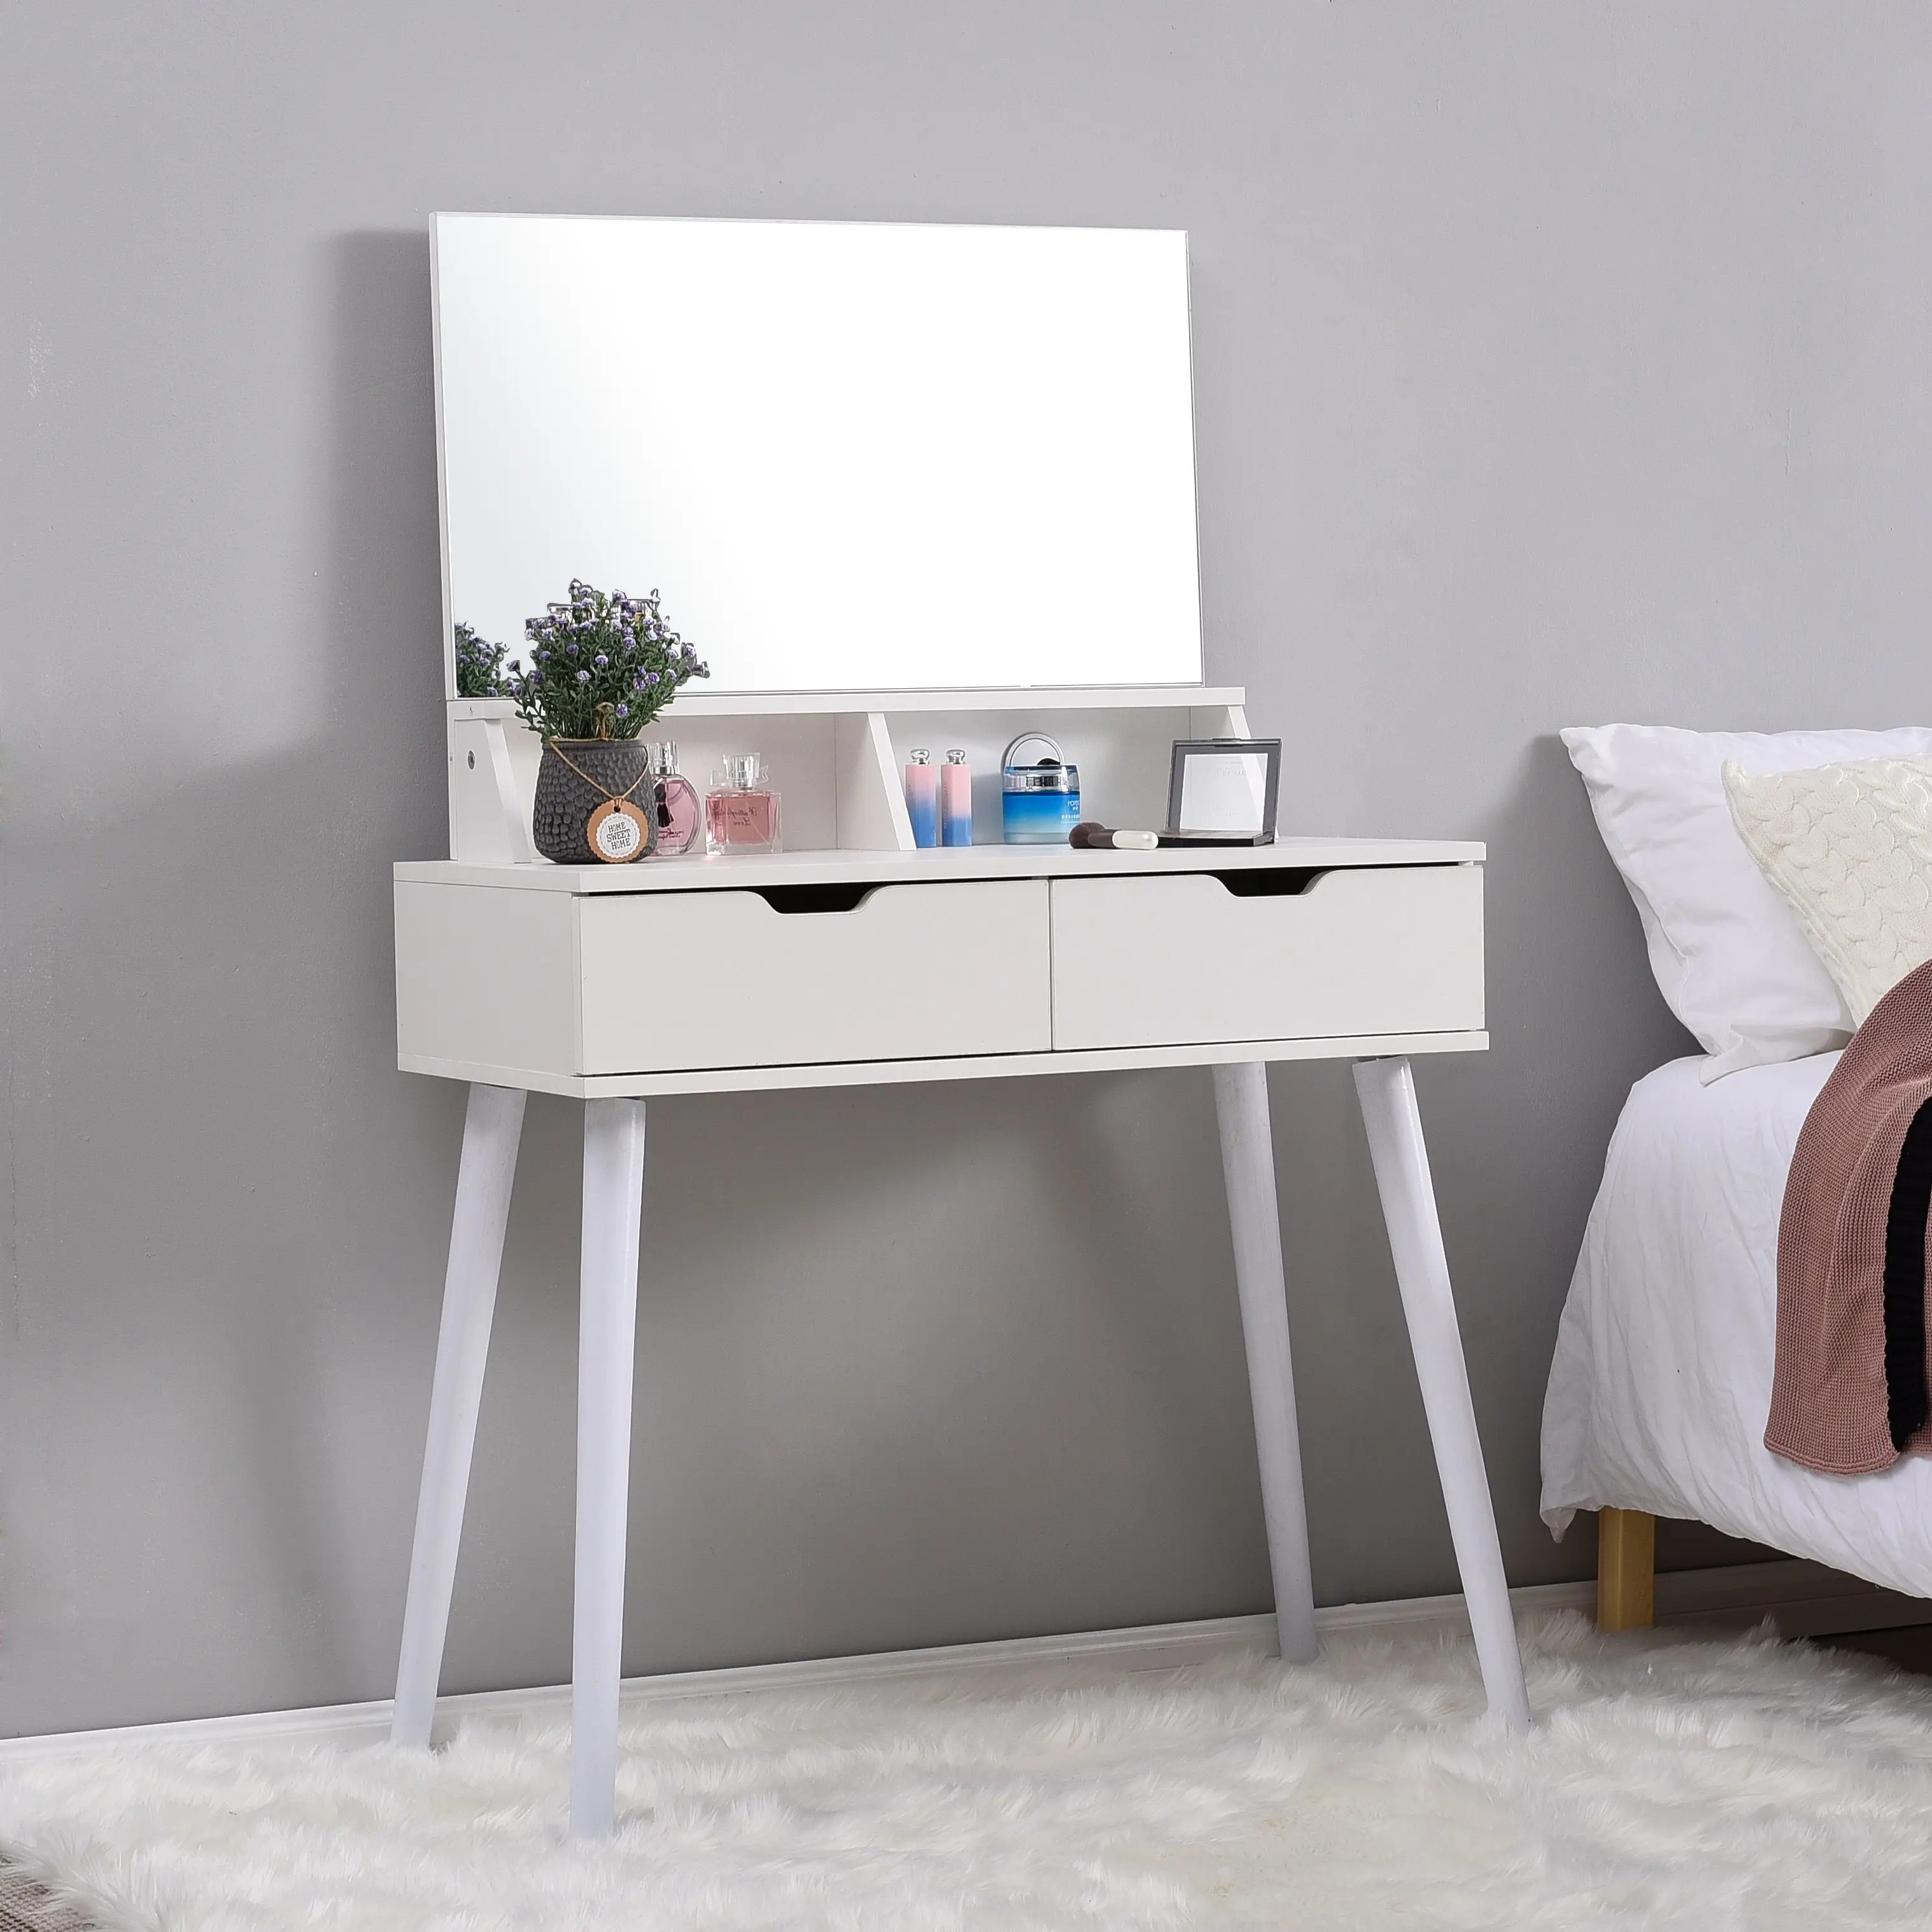 white bedroom vanity table